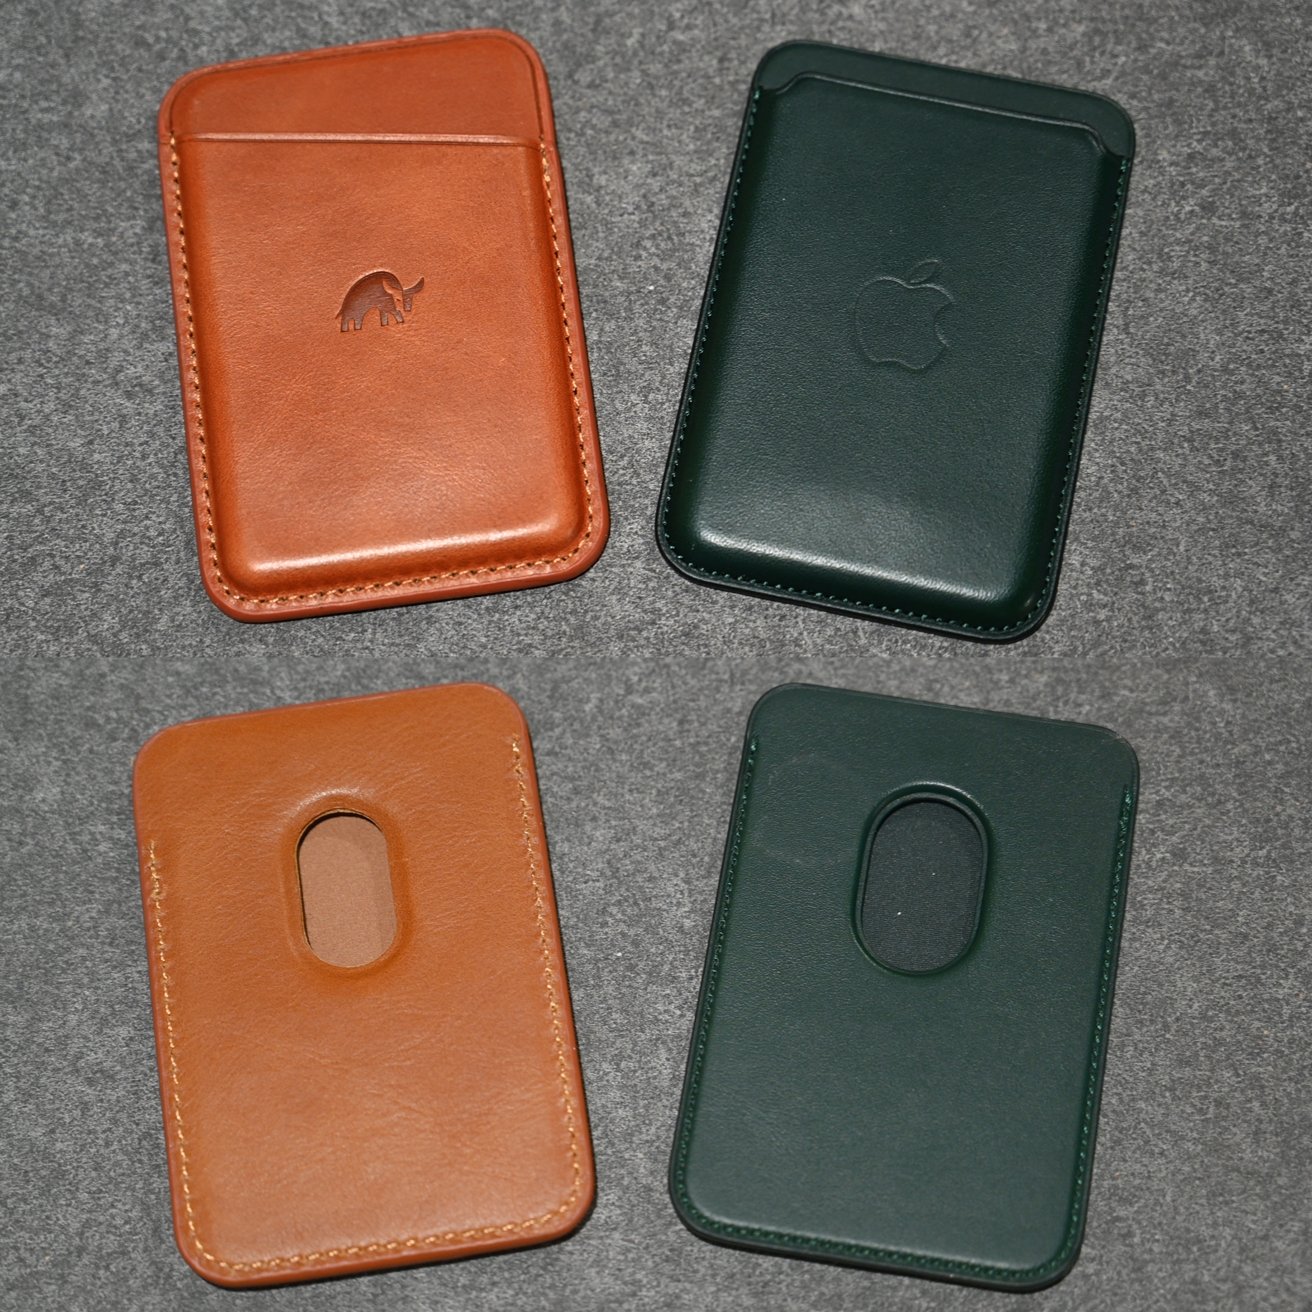 Apple's MagSafe wallet versus Bullstrap's